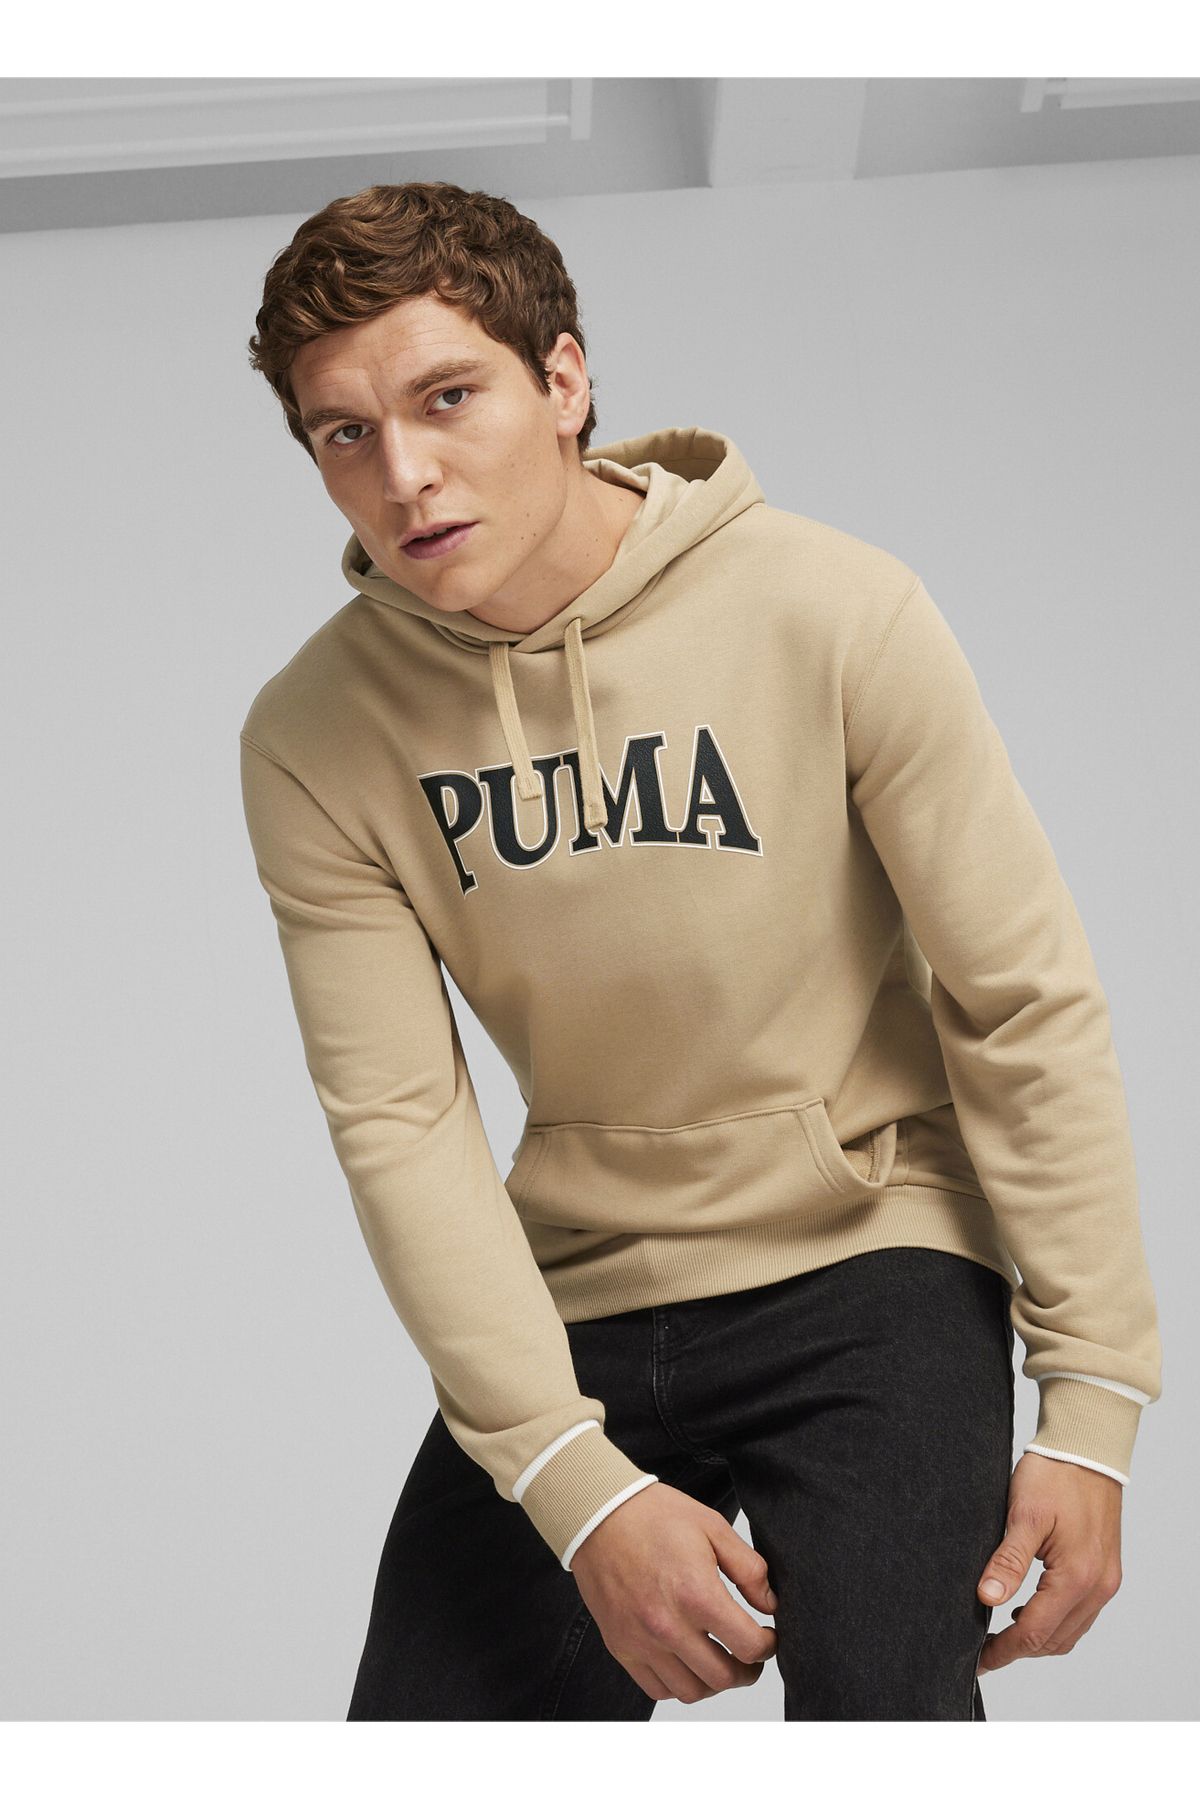 Puma Sweatshirt, S, Ten